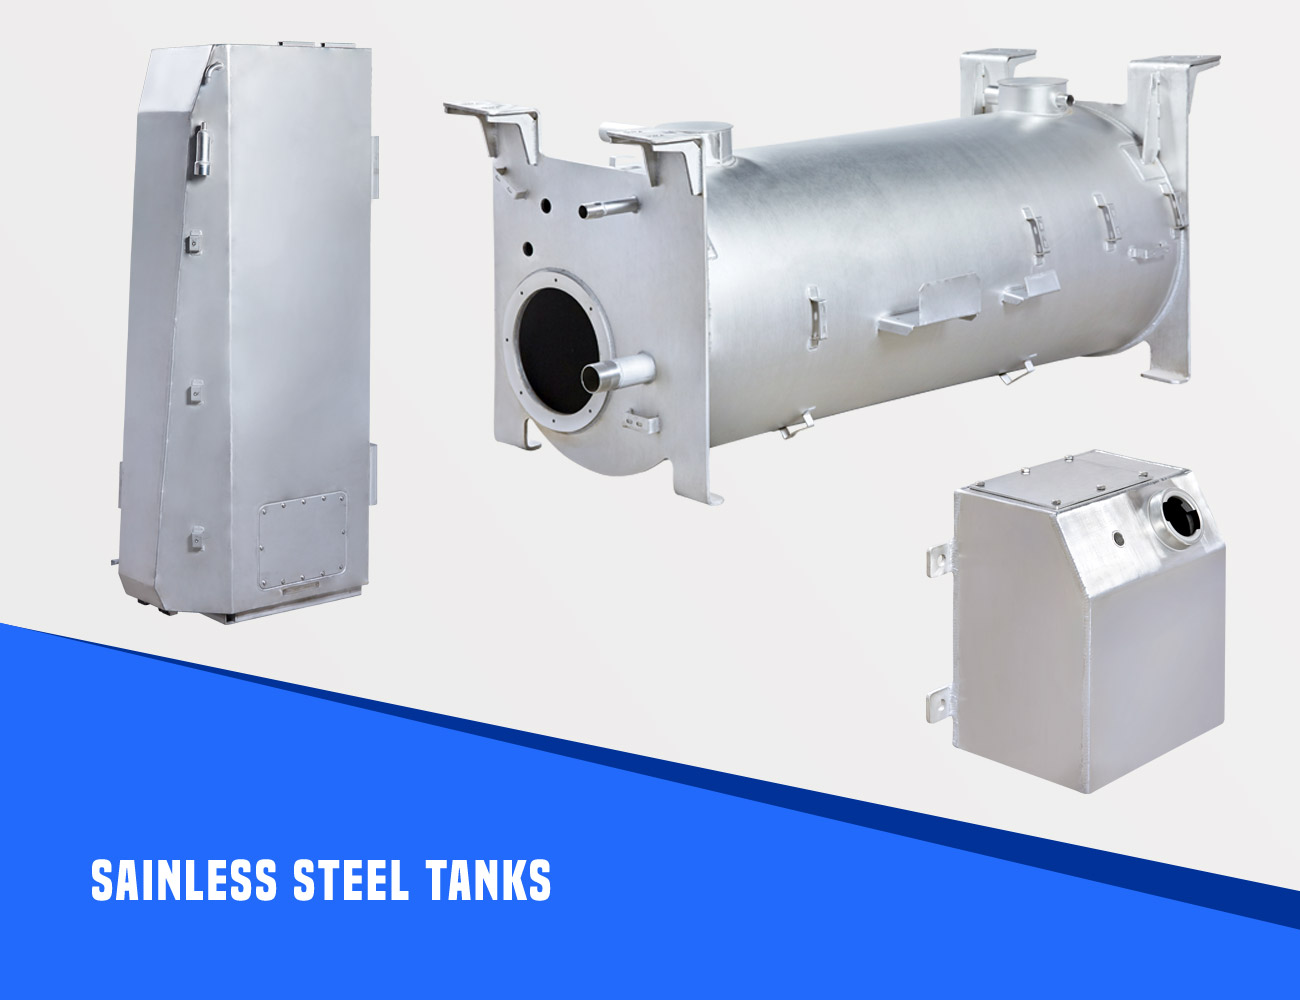 Sainless-Steel-Tanks